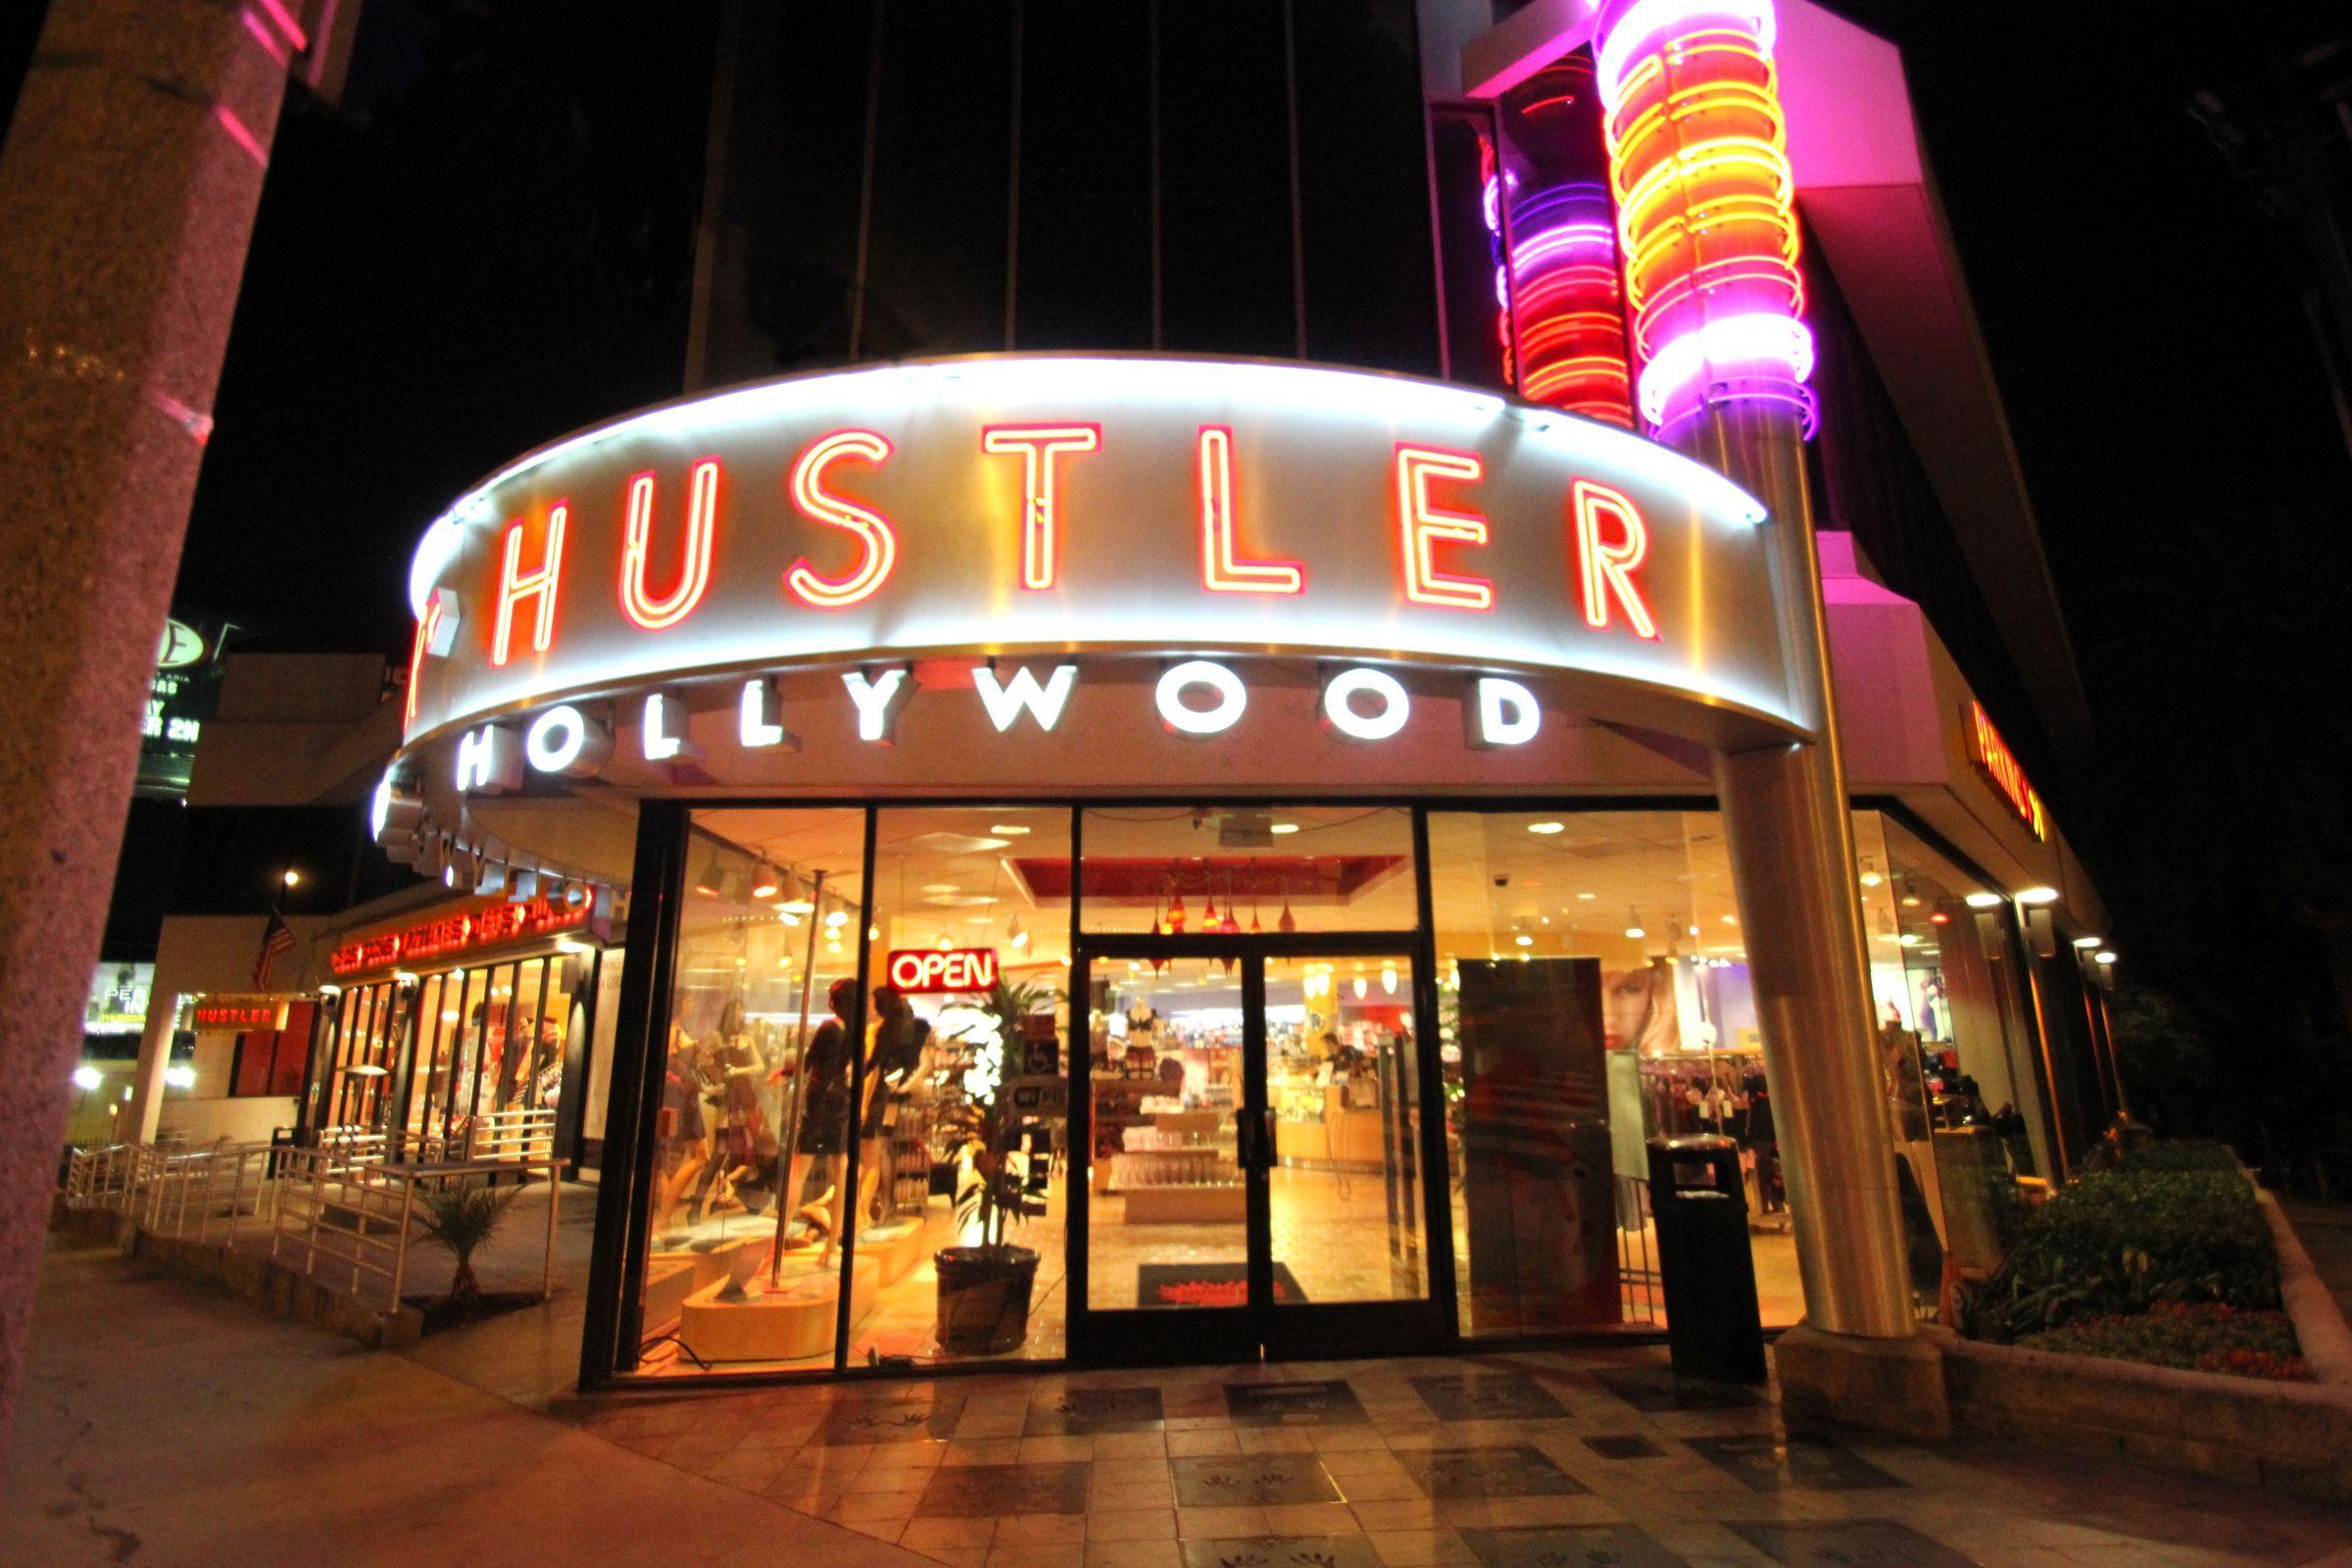 Interstate reccomend Hustler hollywood hours